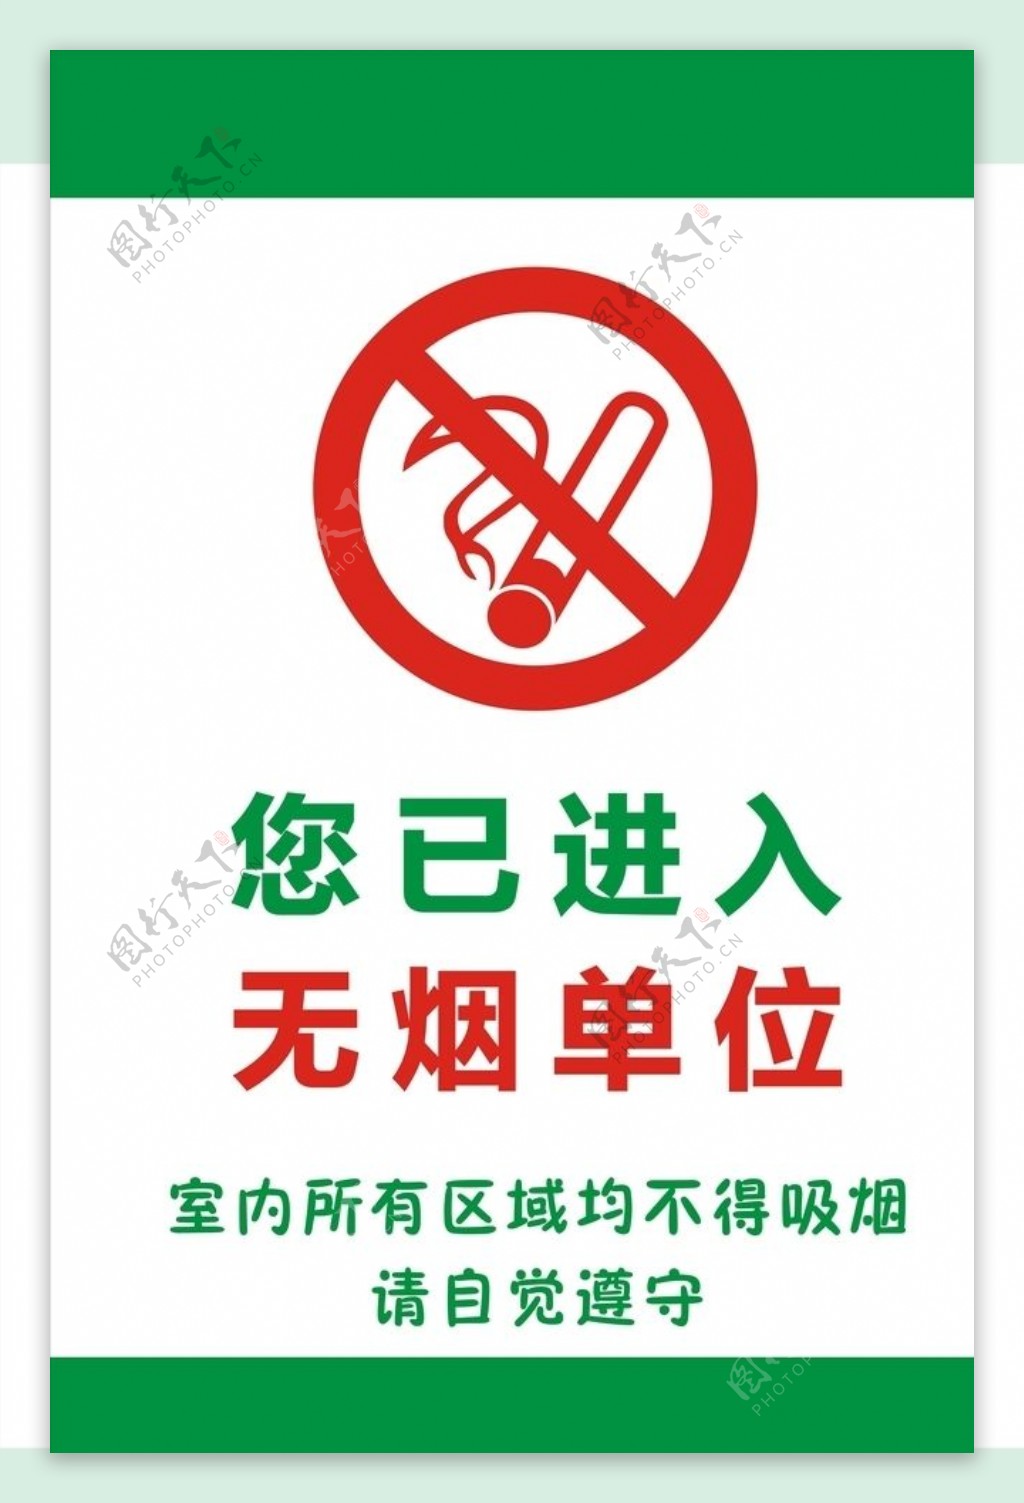 禁止吸烟展架